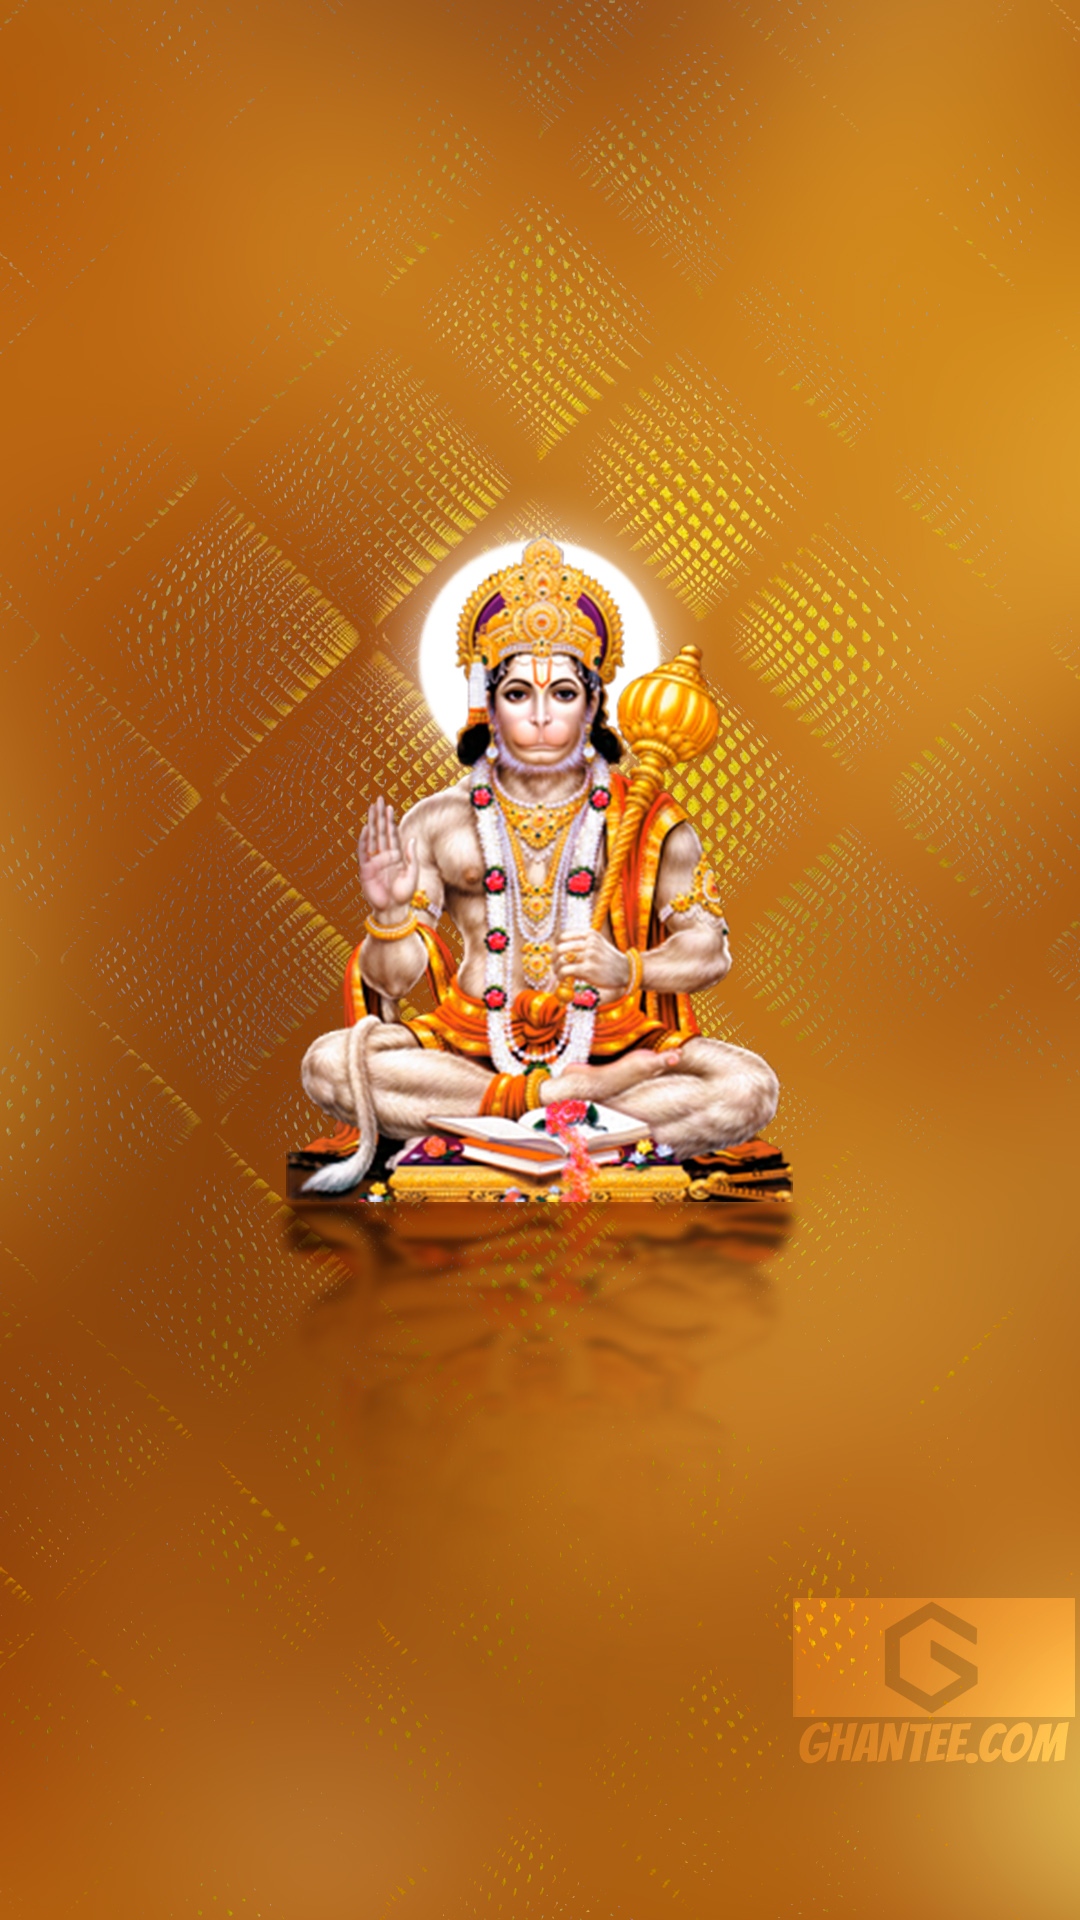 Shri hanuman ji ke - god hanuman ji